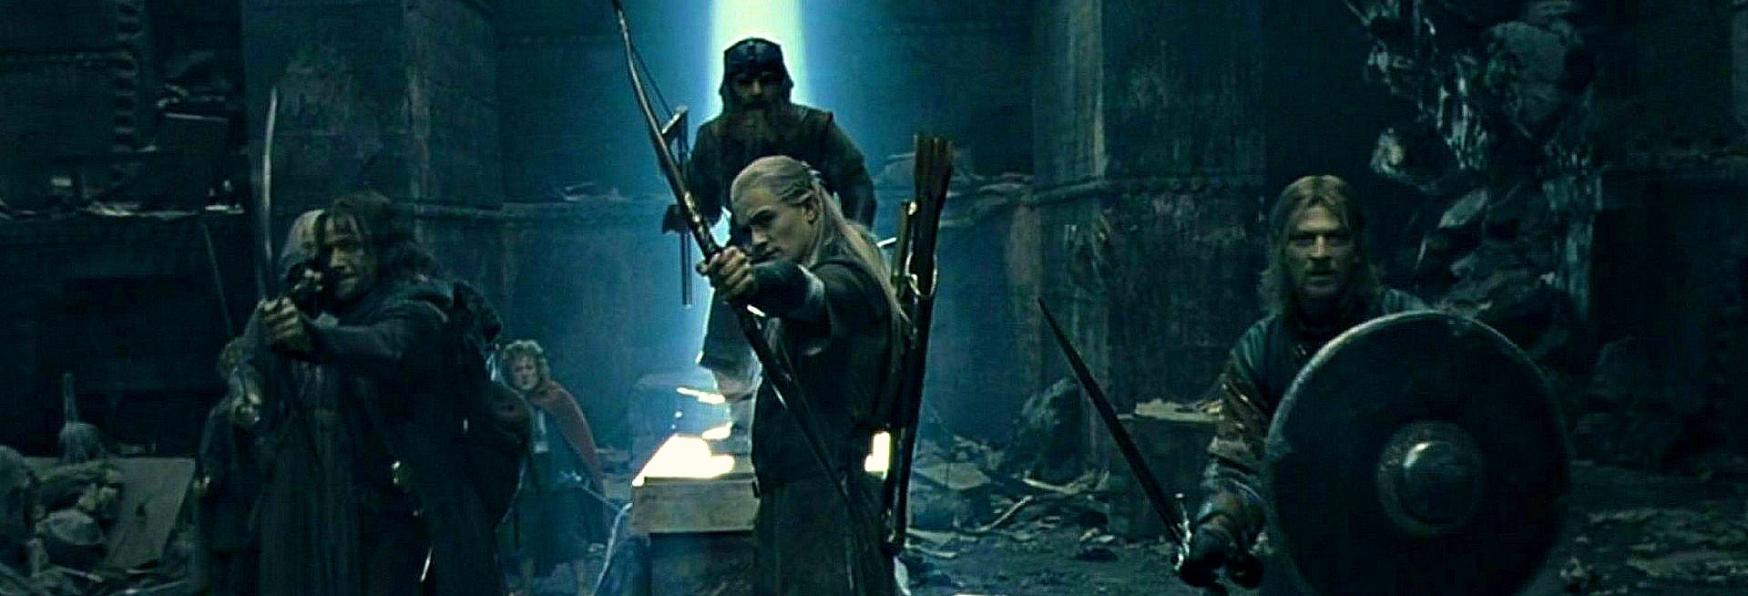 Il Signore degli Anelli: un Regista di The Witcher si unisce al Team della Serie TV Amazon